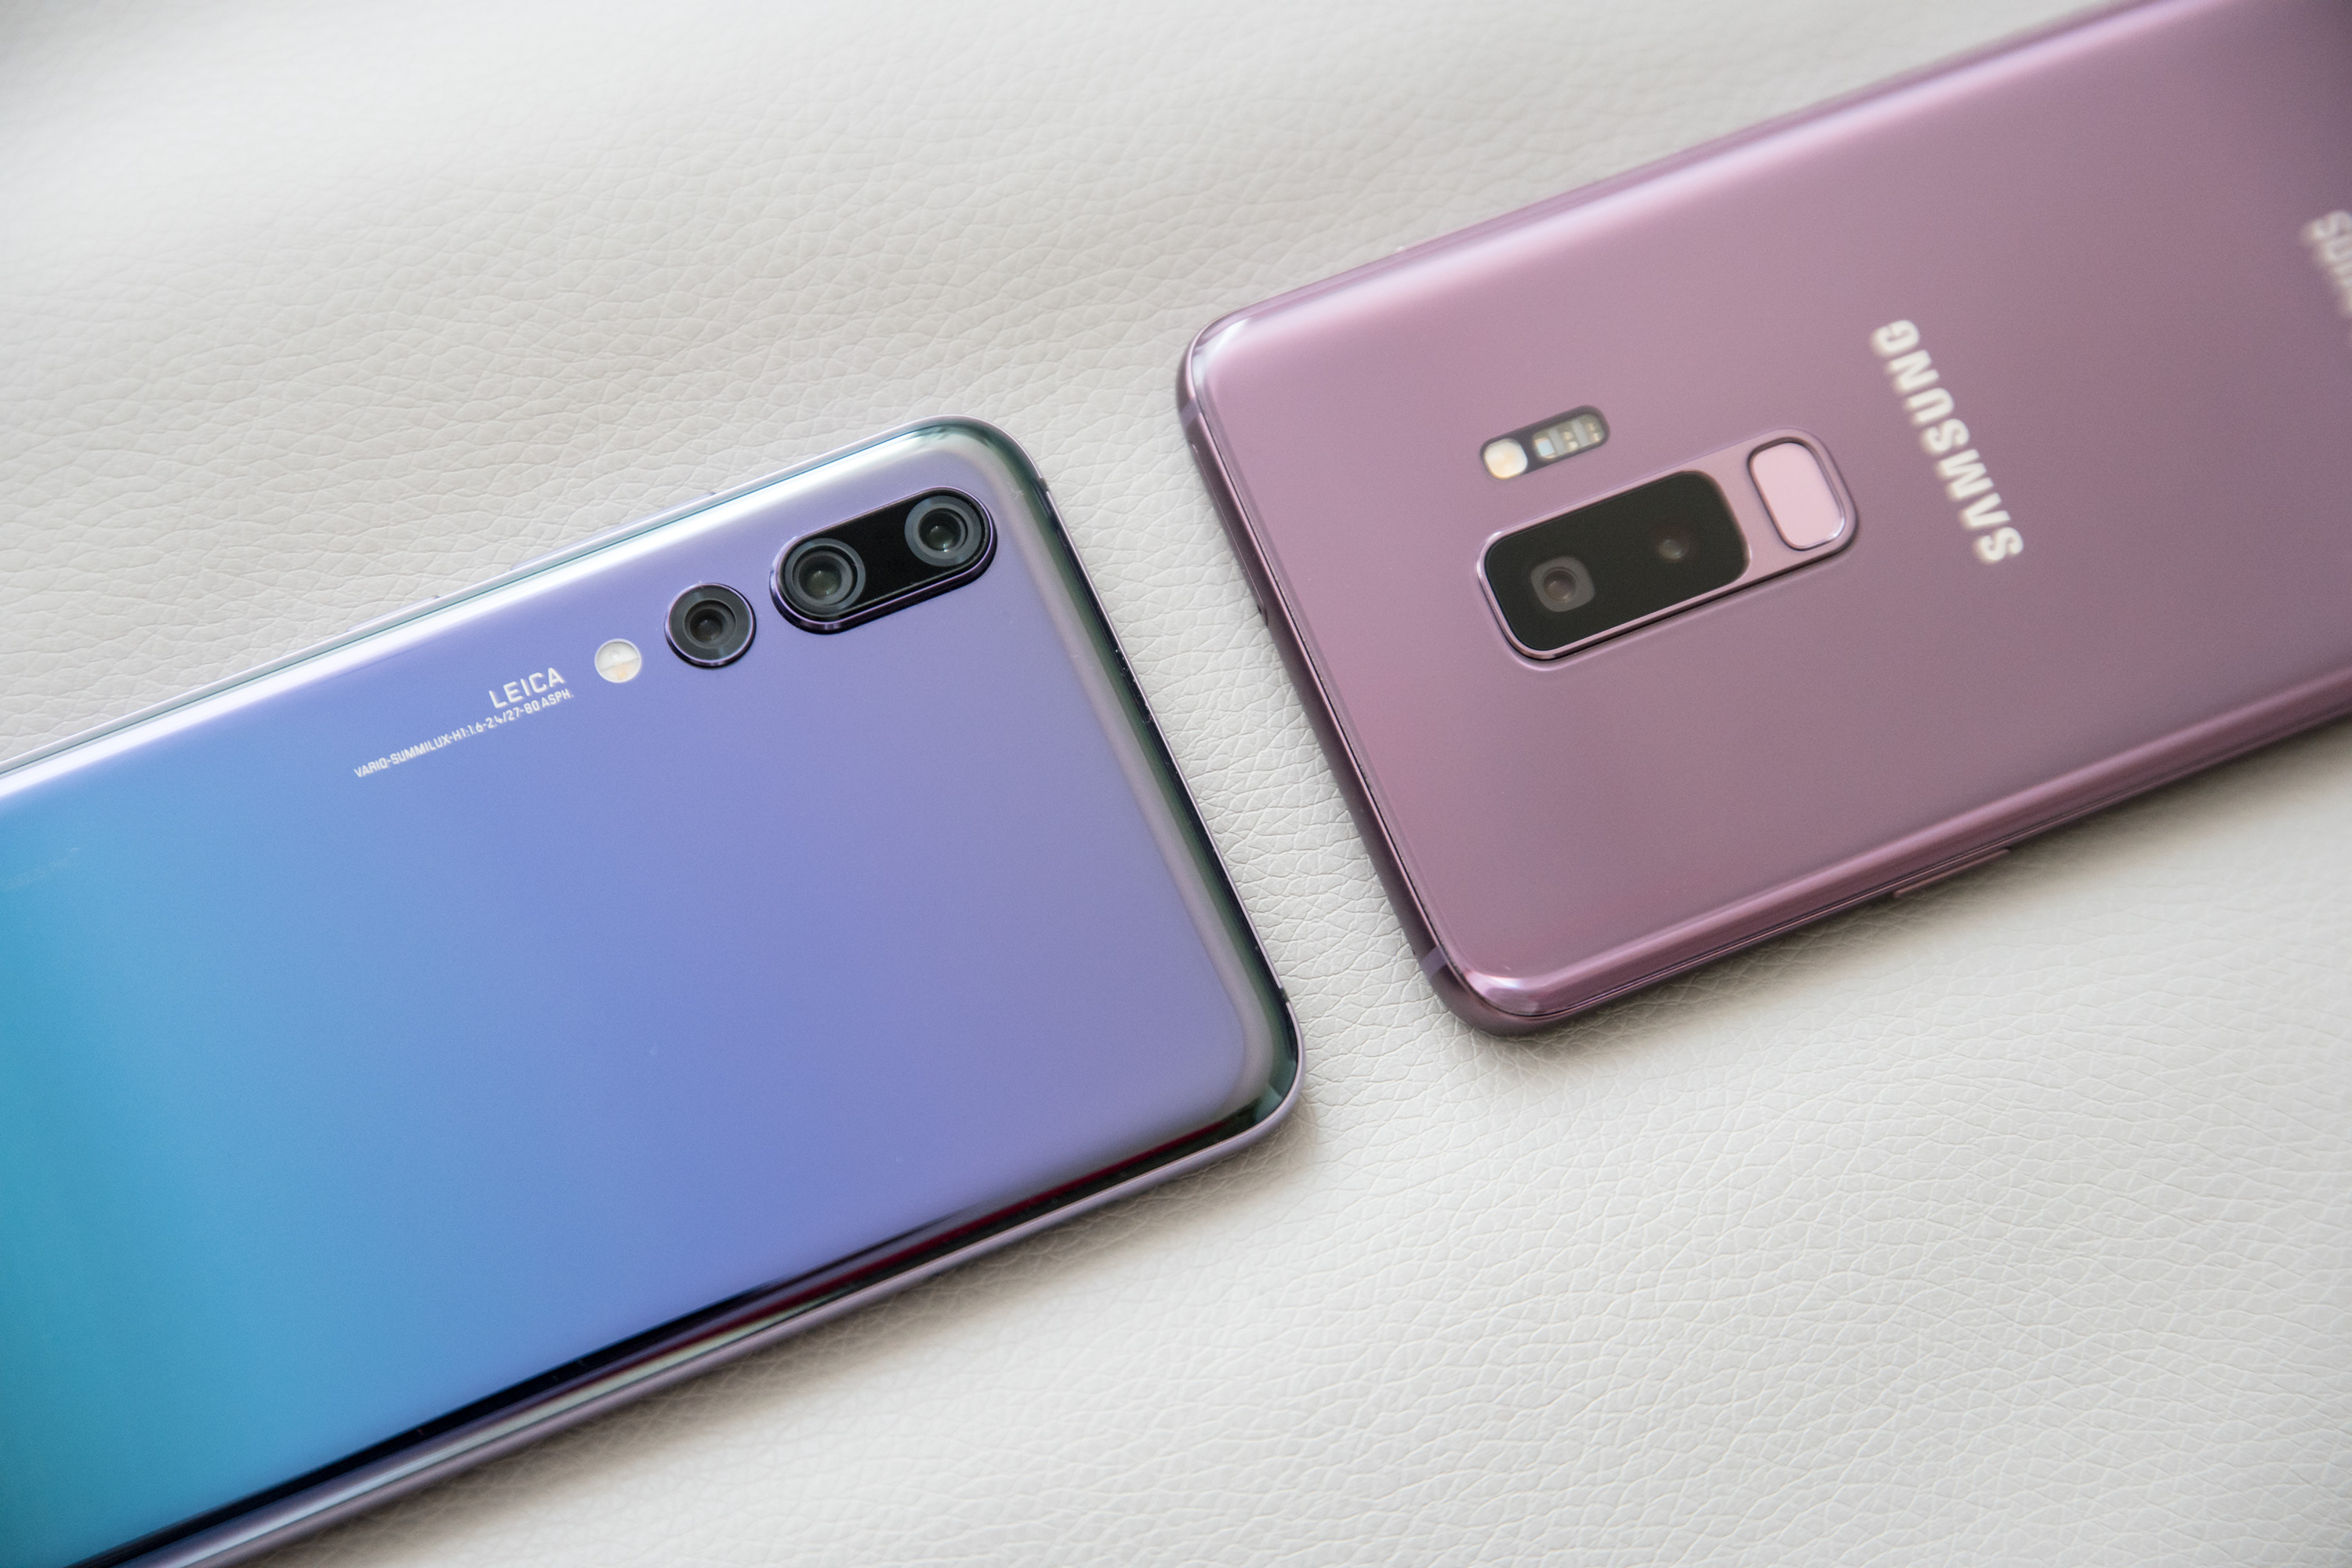 Samsung Galaxy S9 Und Huawei P20 Pro Im Ersten Vergleich 4k All About Samsung